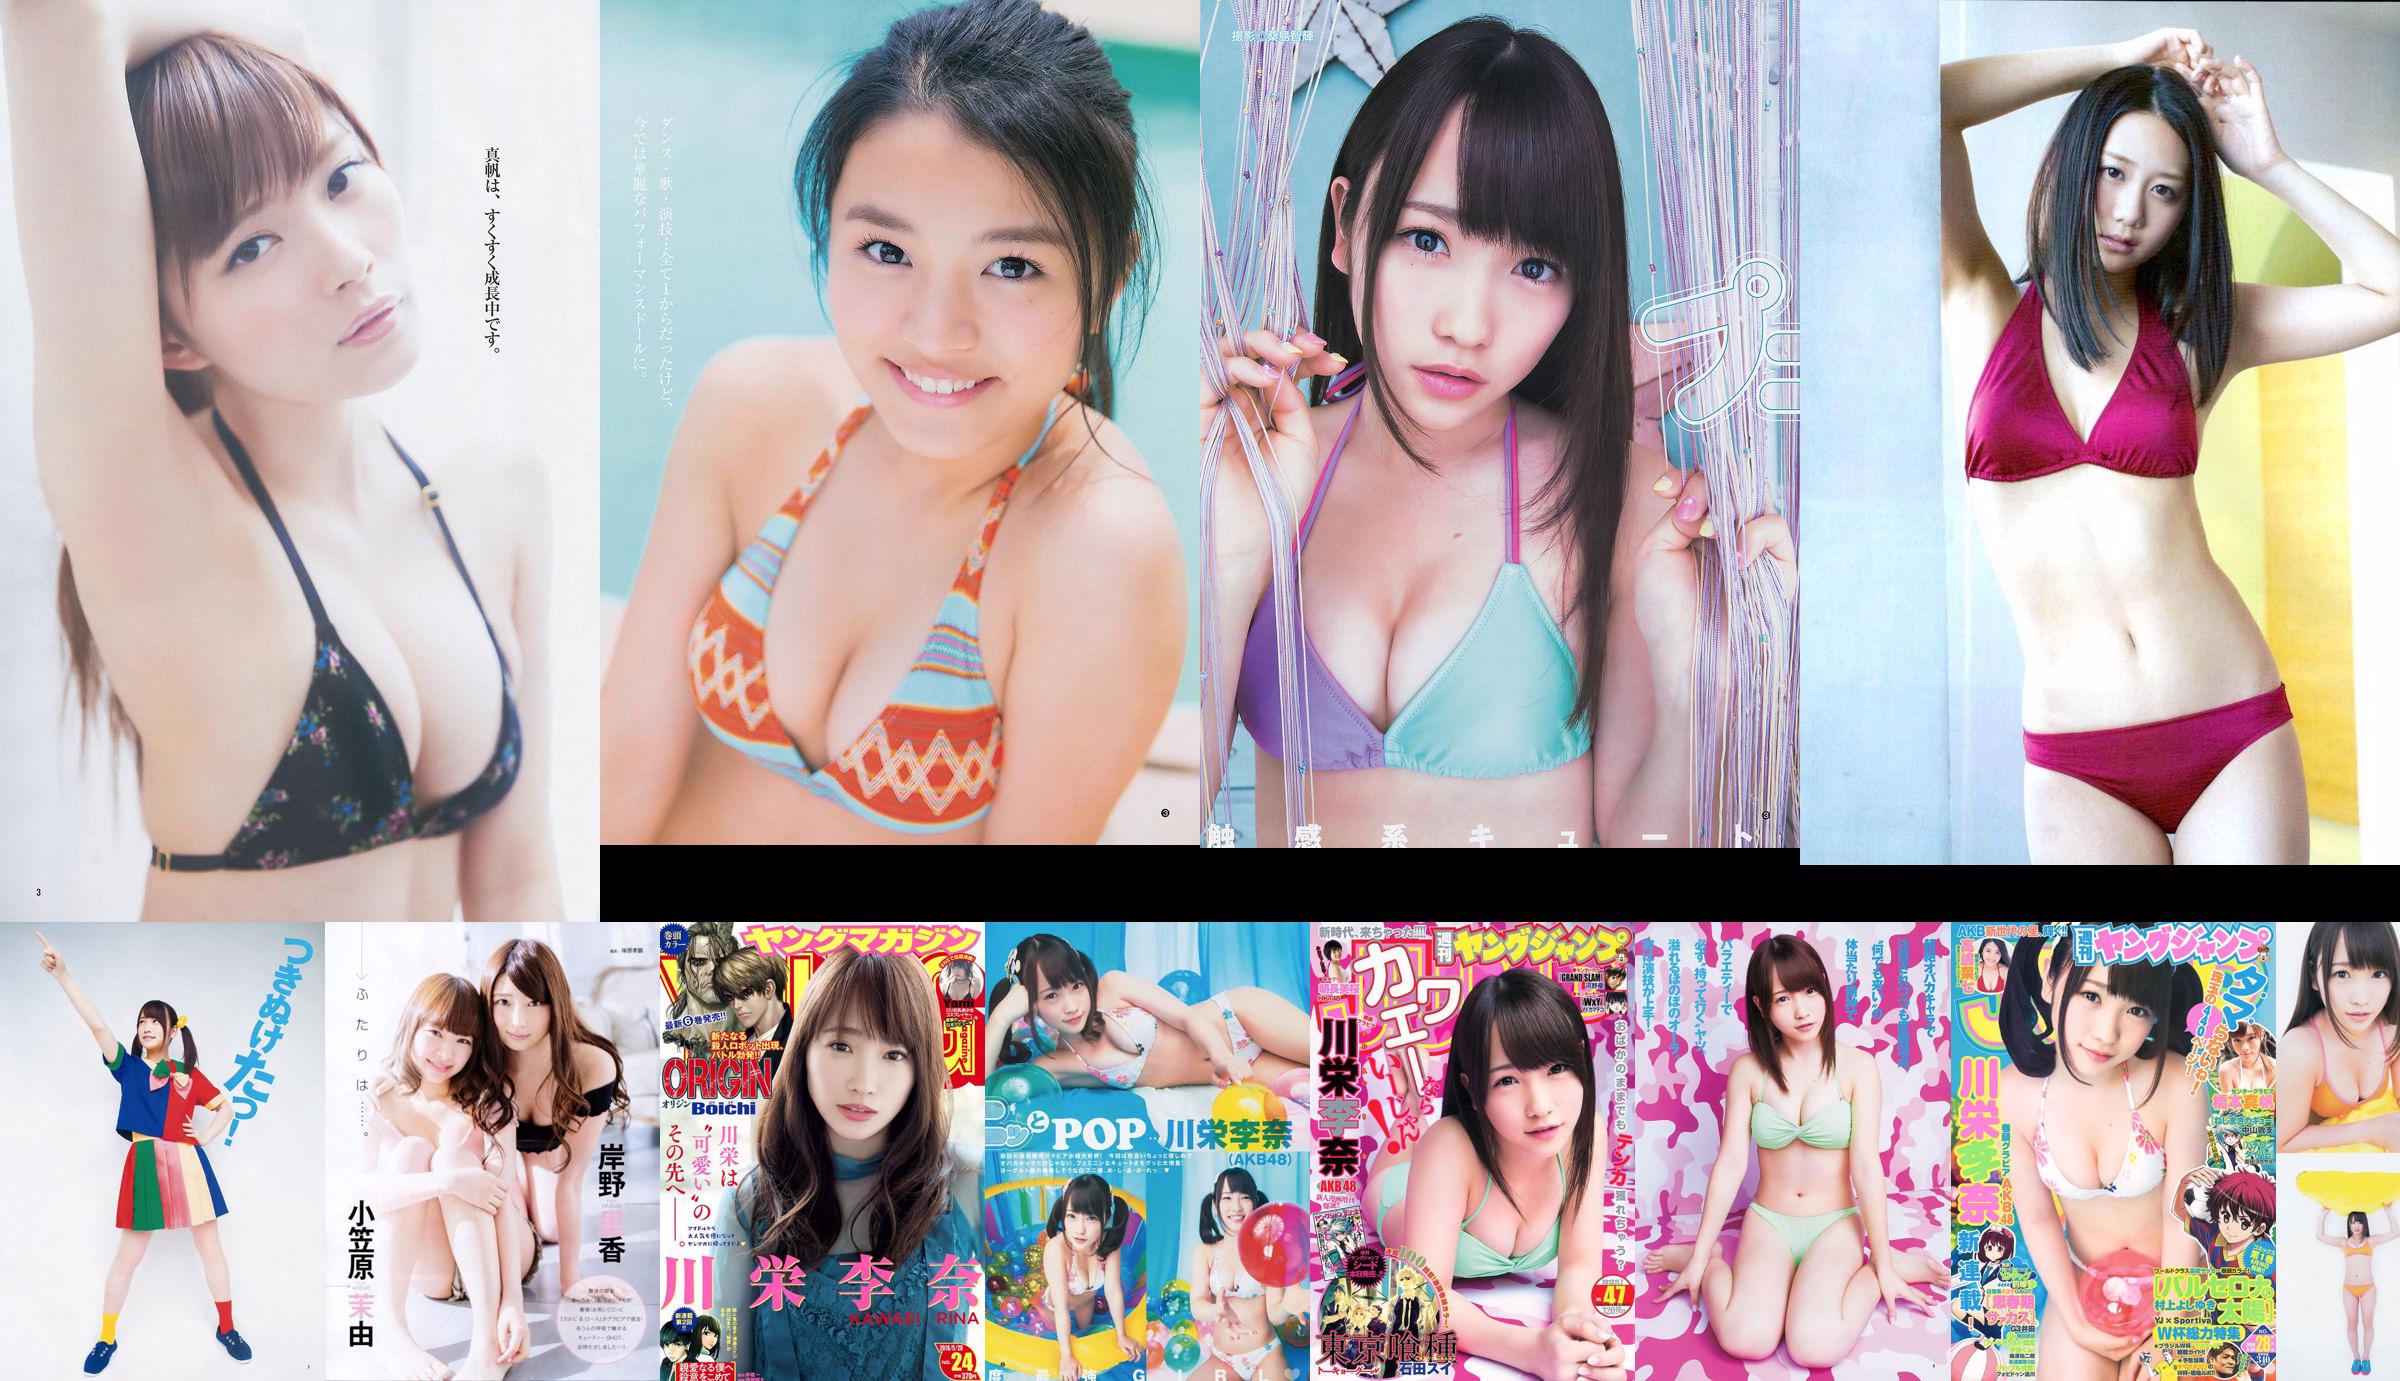 Rina Kawaei Maho Hashimoto Nana Takashima [Weekly Young Jump] 2014 No.28 Photograph No.5a4616 หน้า 2